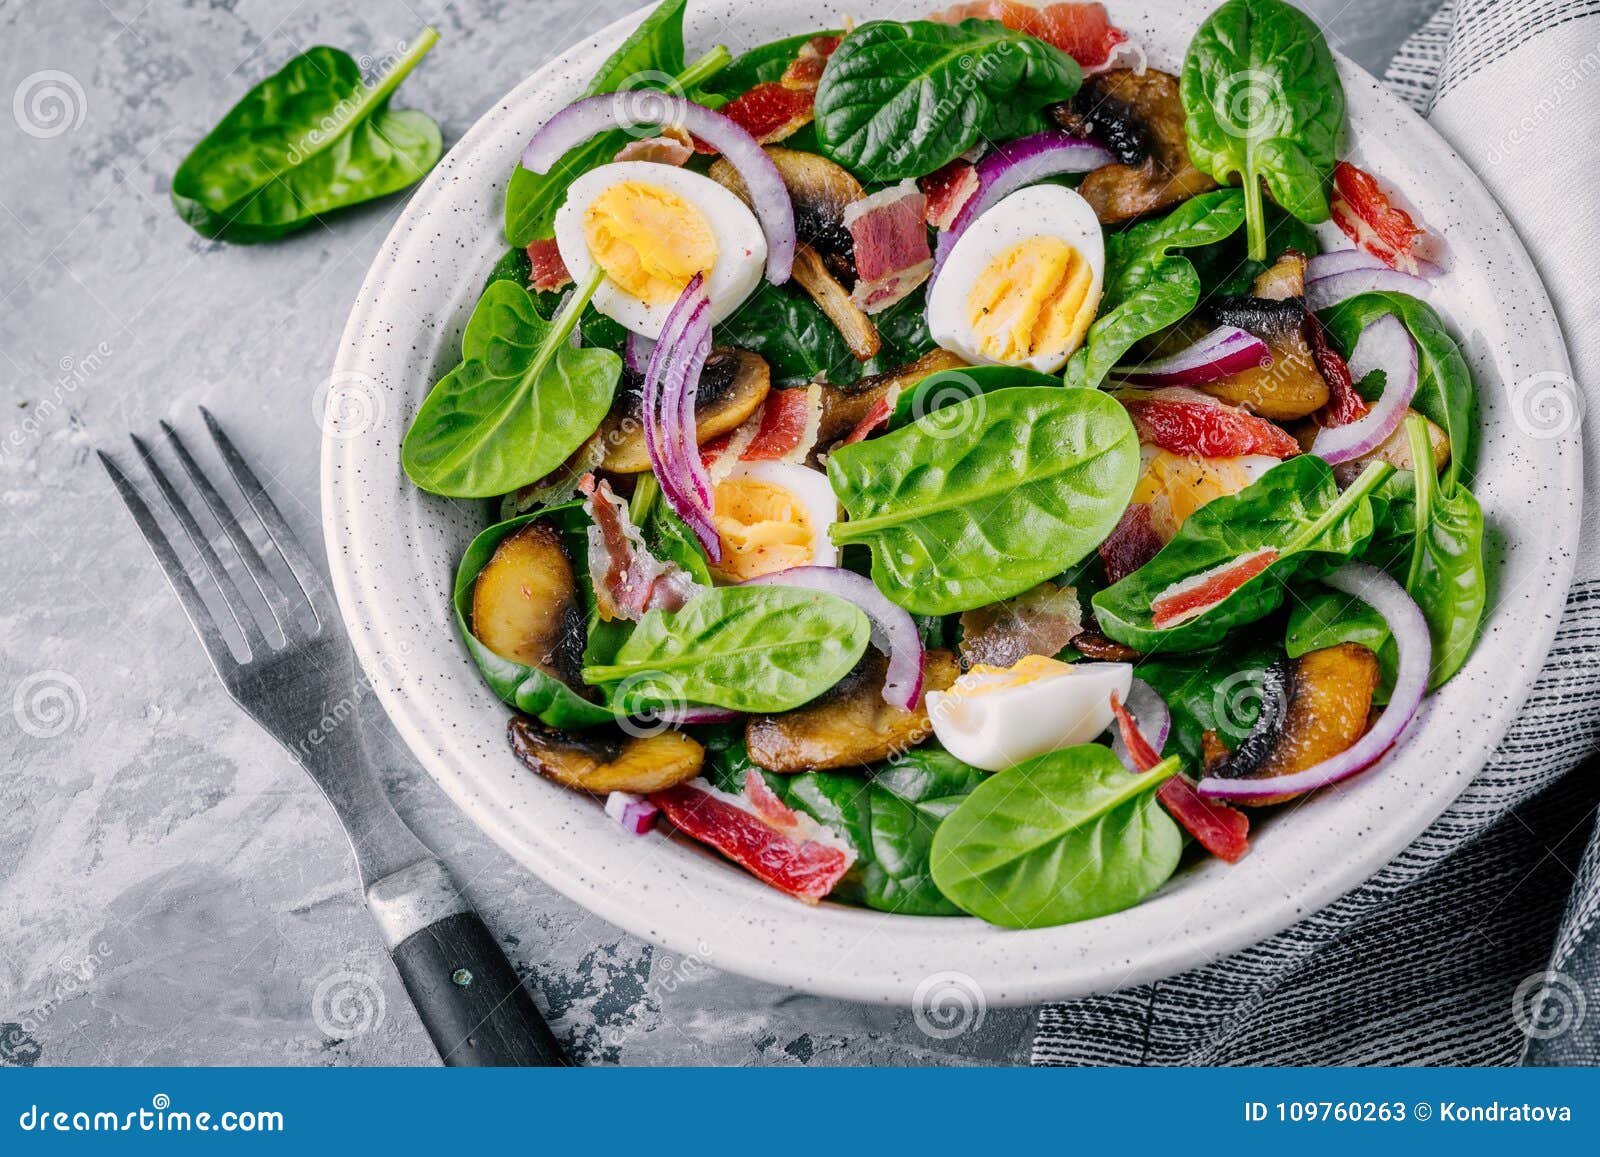 Ciotola del pranzo di insalata degli spinaci con bacon, i funghi, le uova e le cipolle rosse su fondo grigio